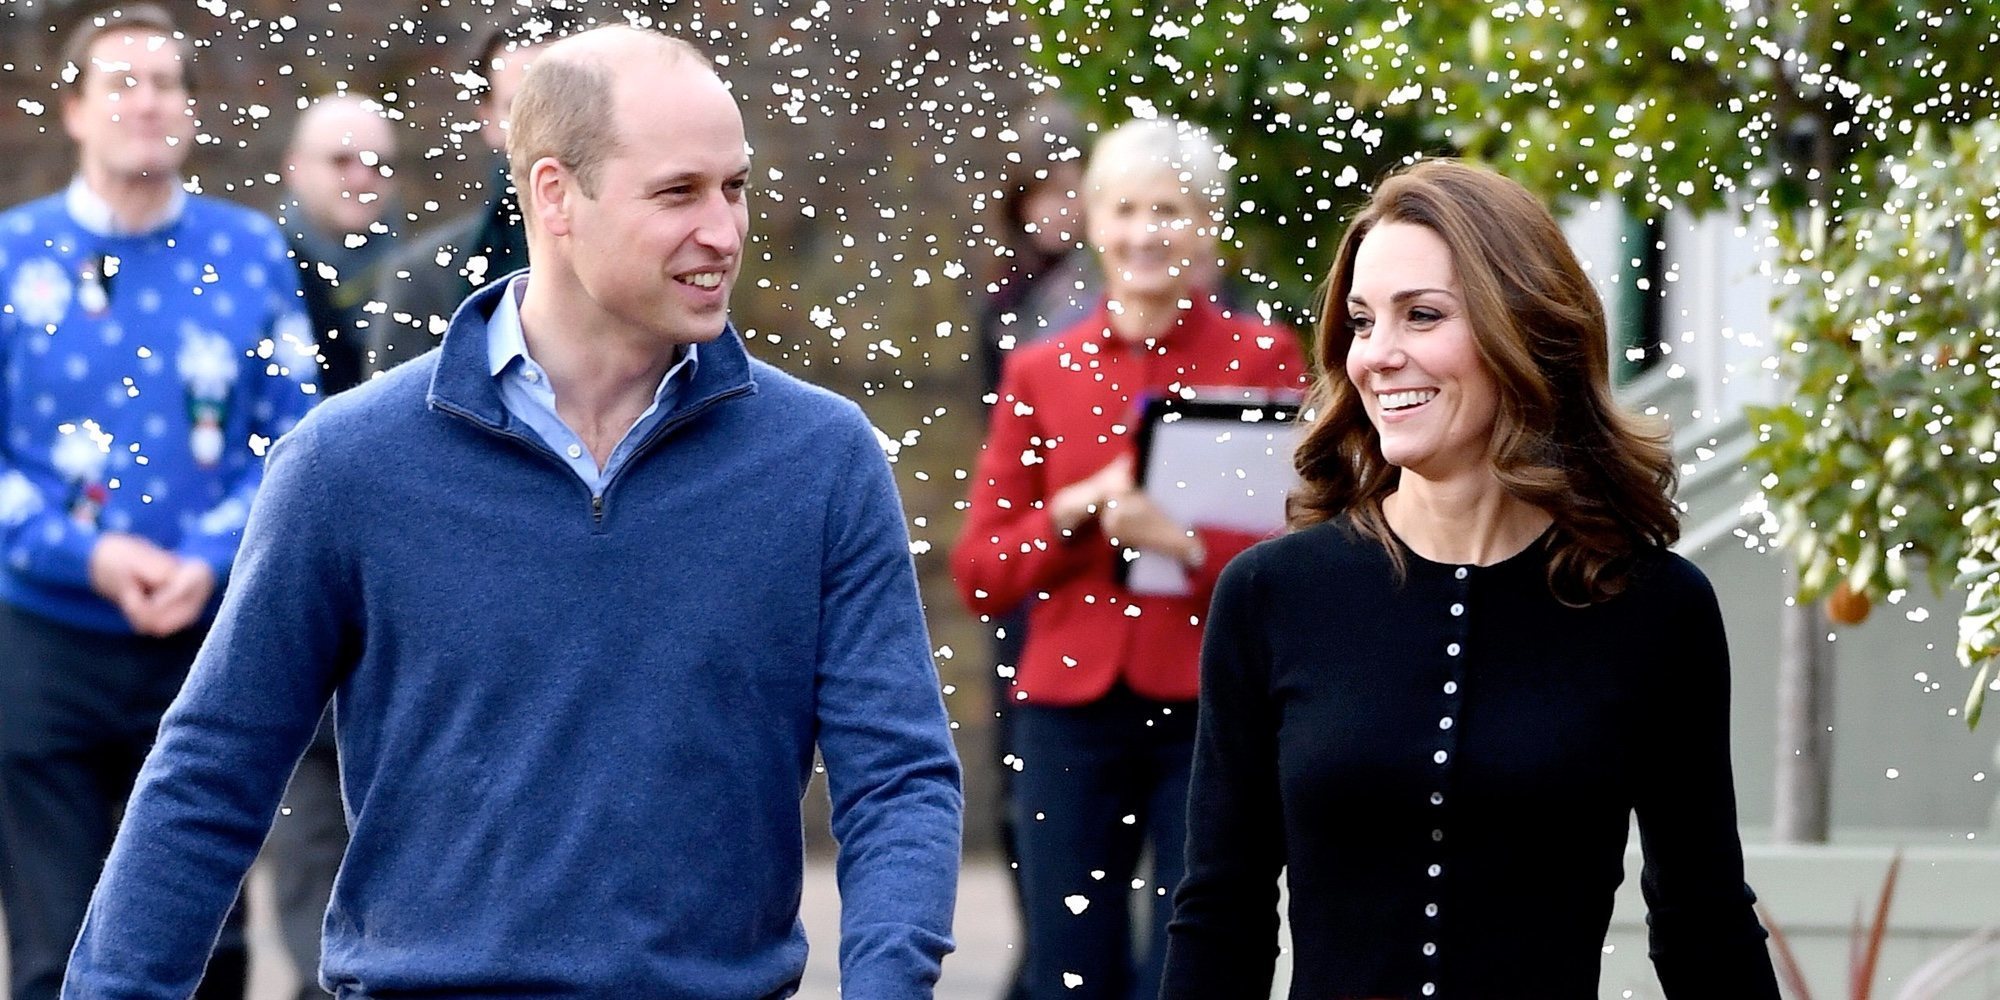 La decisión del Príncipe Guillermo y Kate Middleton para proteger su intimidad en Kensington Palace